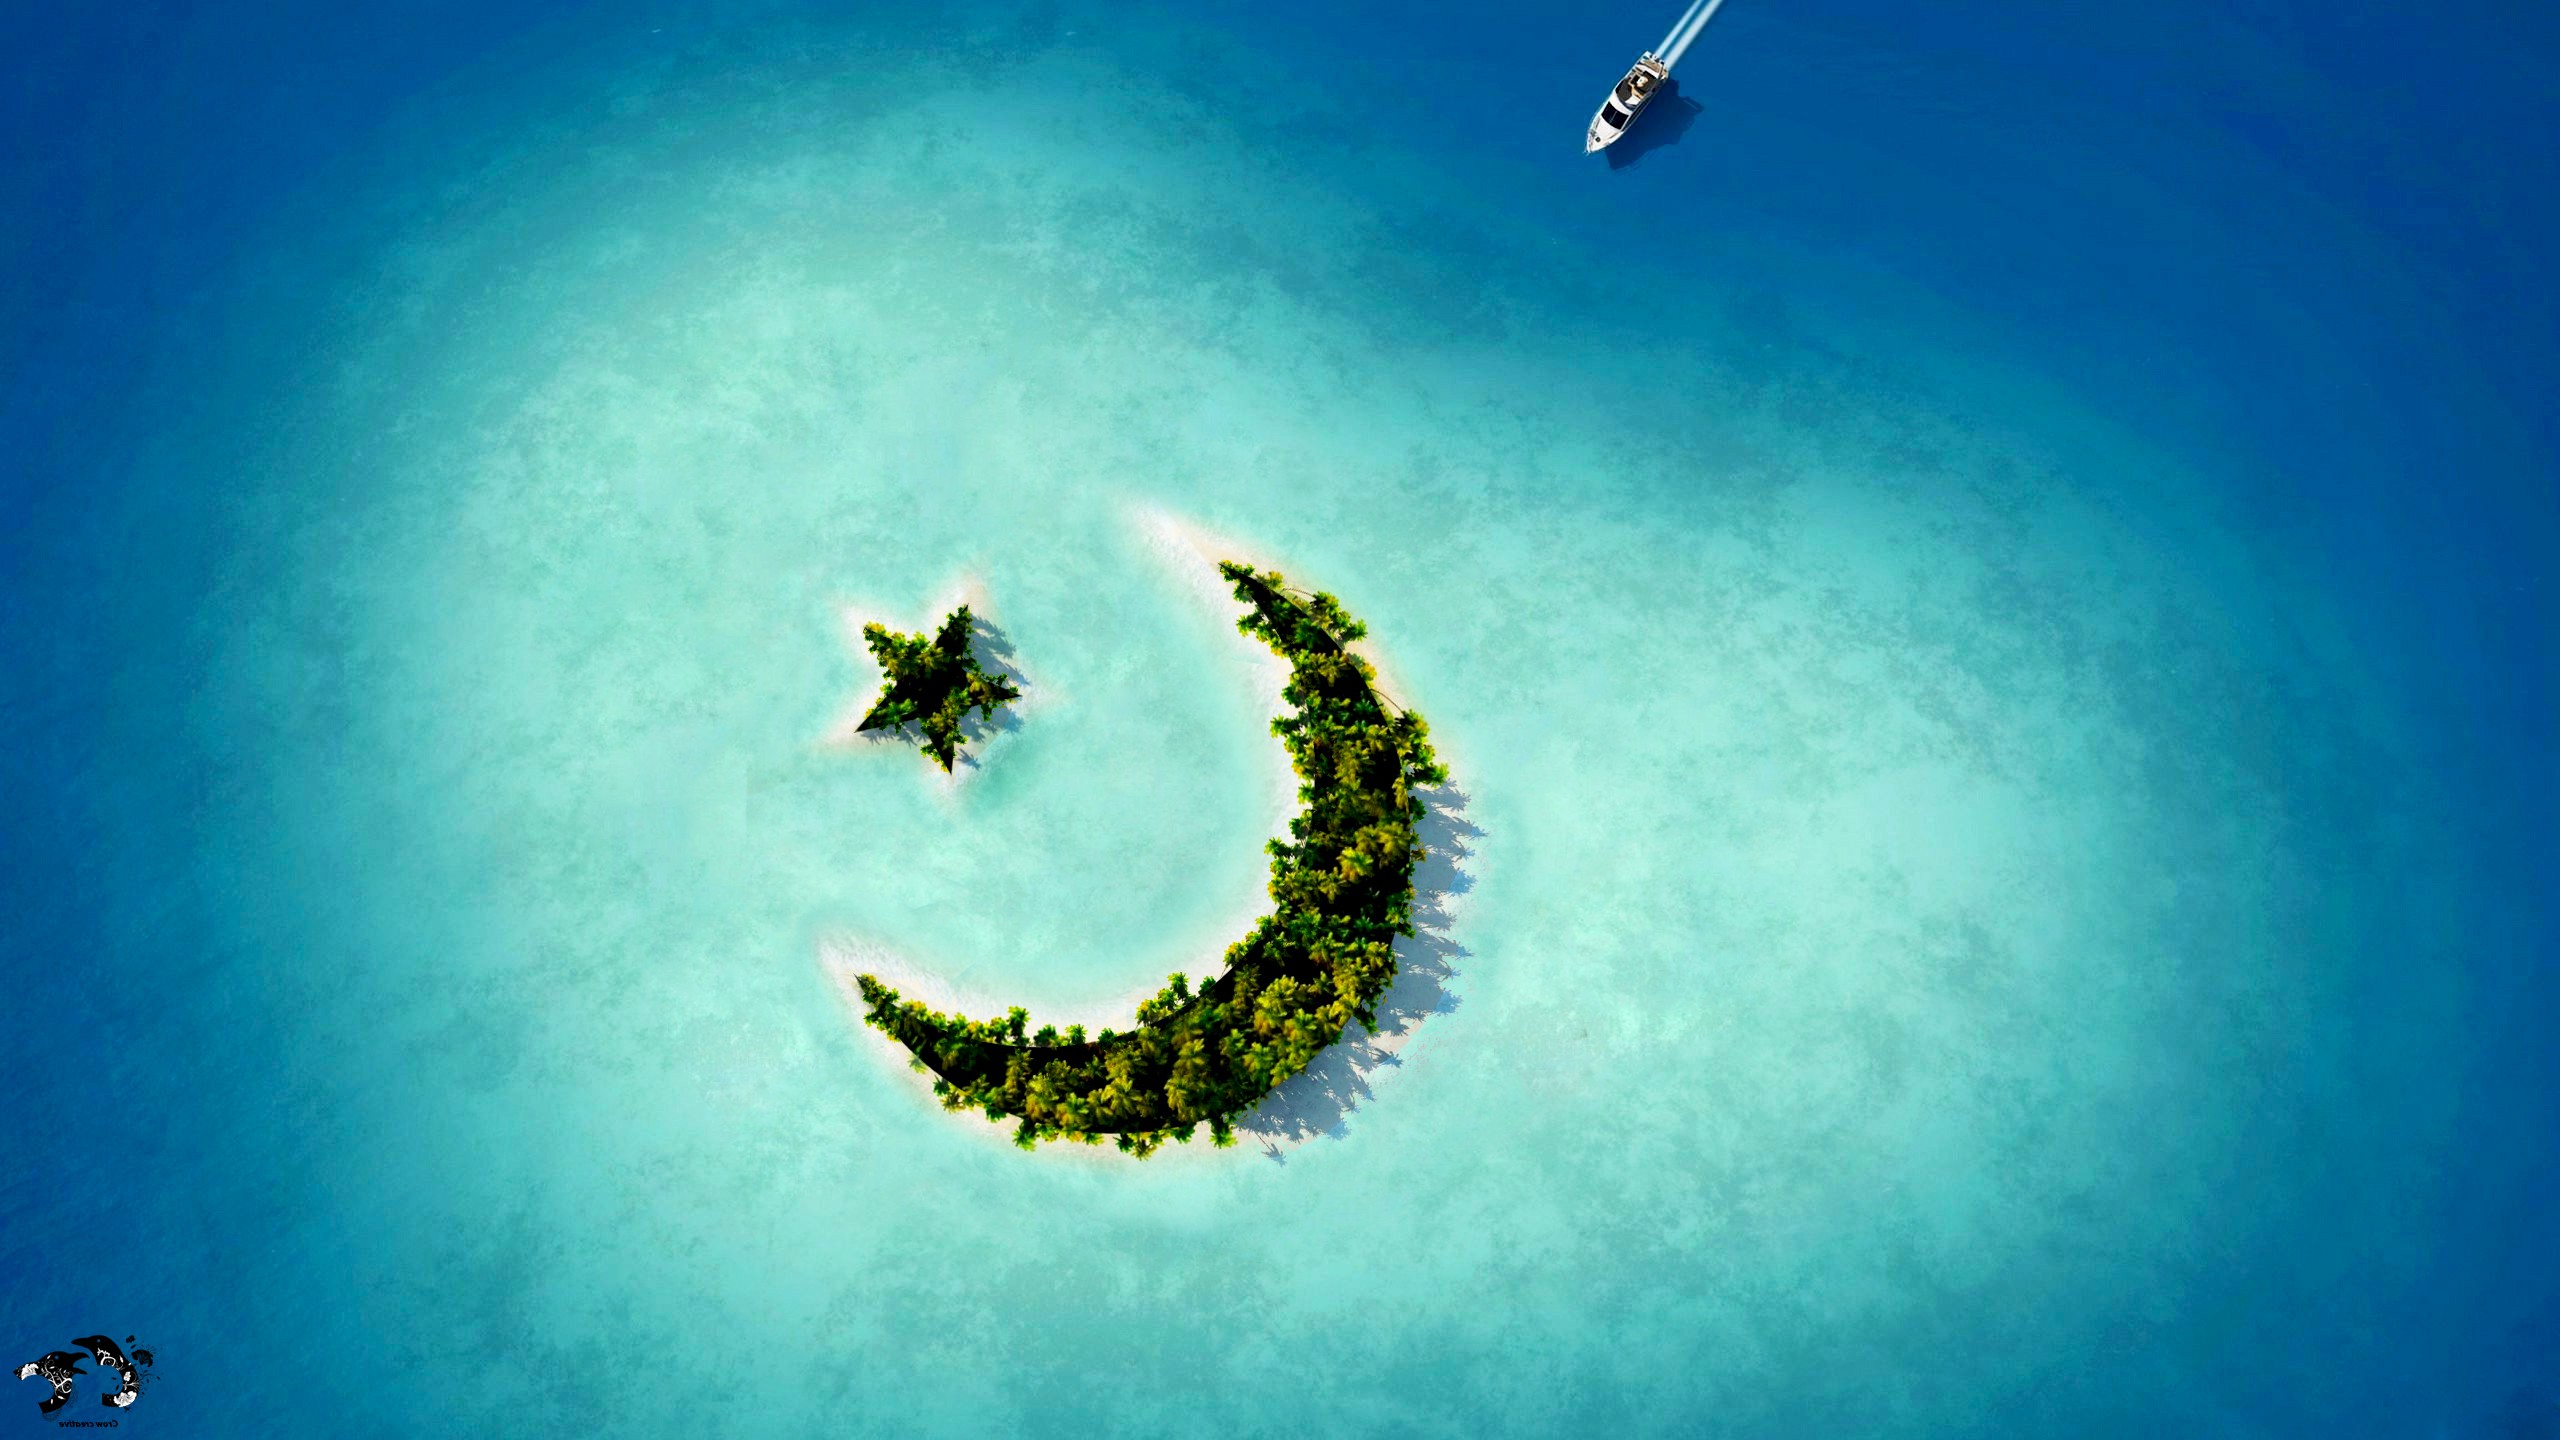 壁纸描绘了深海中的一座岛屿，其形状为带星星的新月